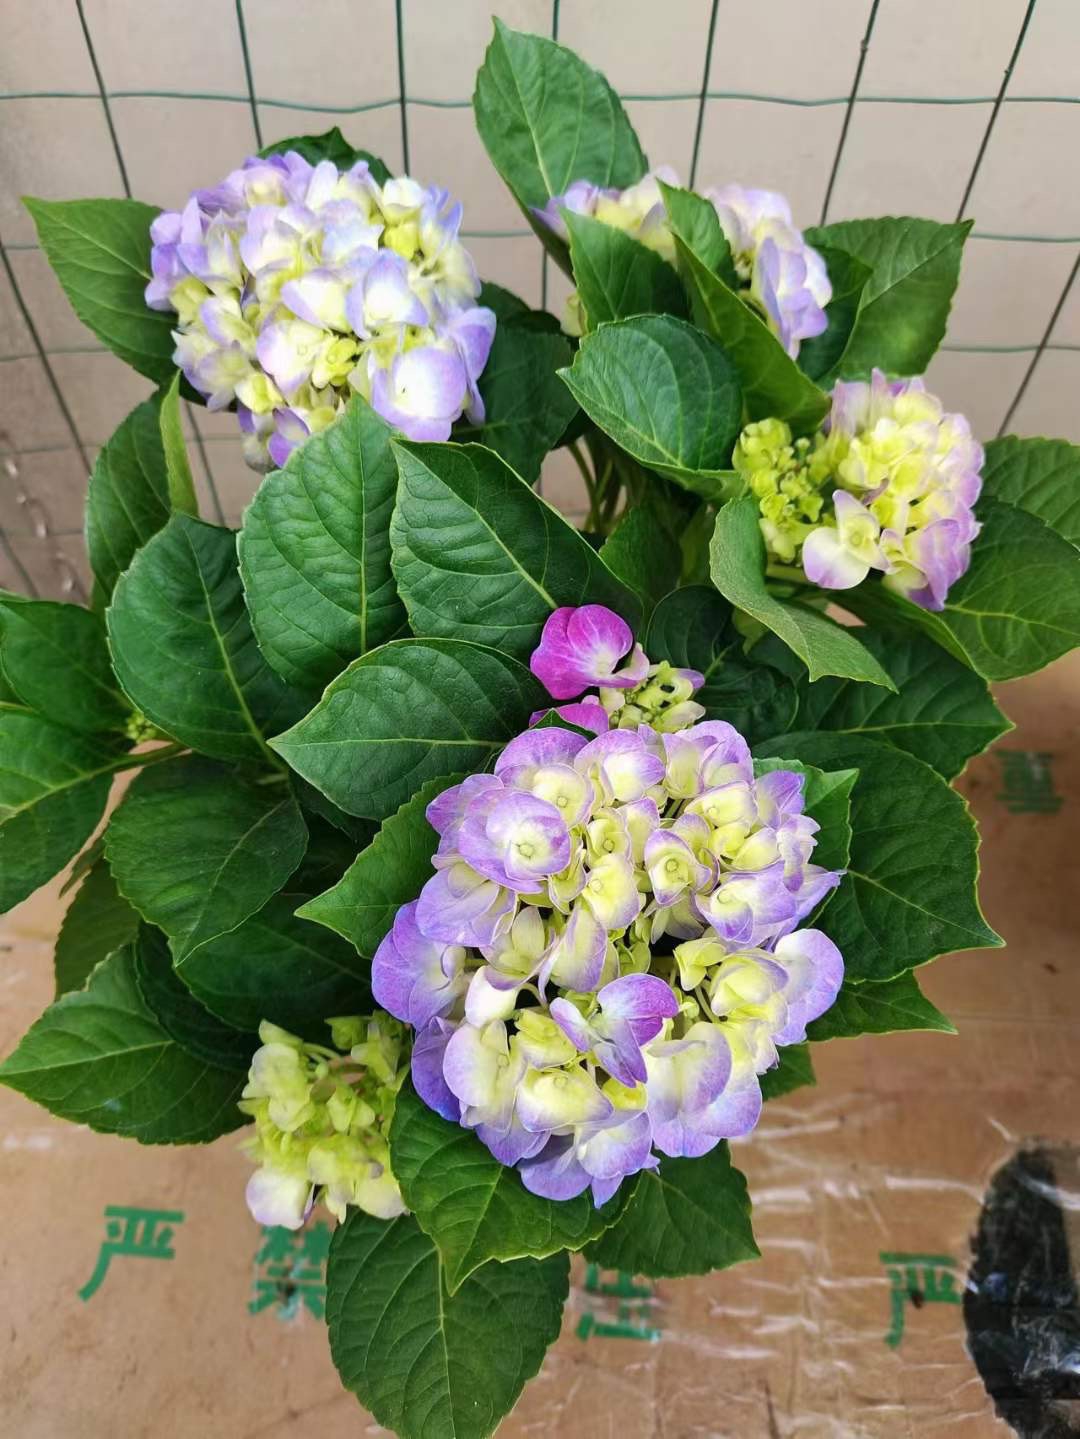 Hoa cẩm tú cầu tím giống cây tốt, bền đẹp tại Đà Nẵng - Hoa Sen Việt 